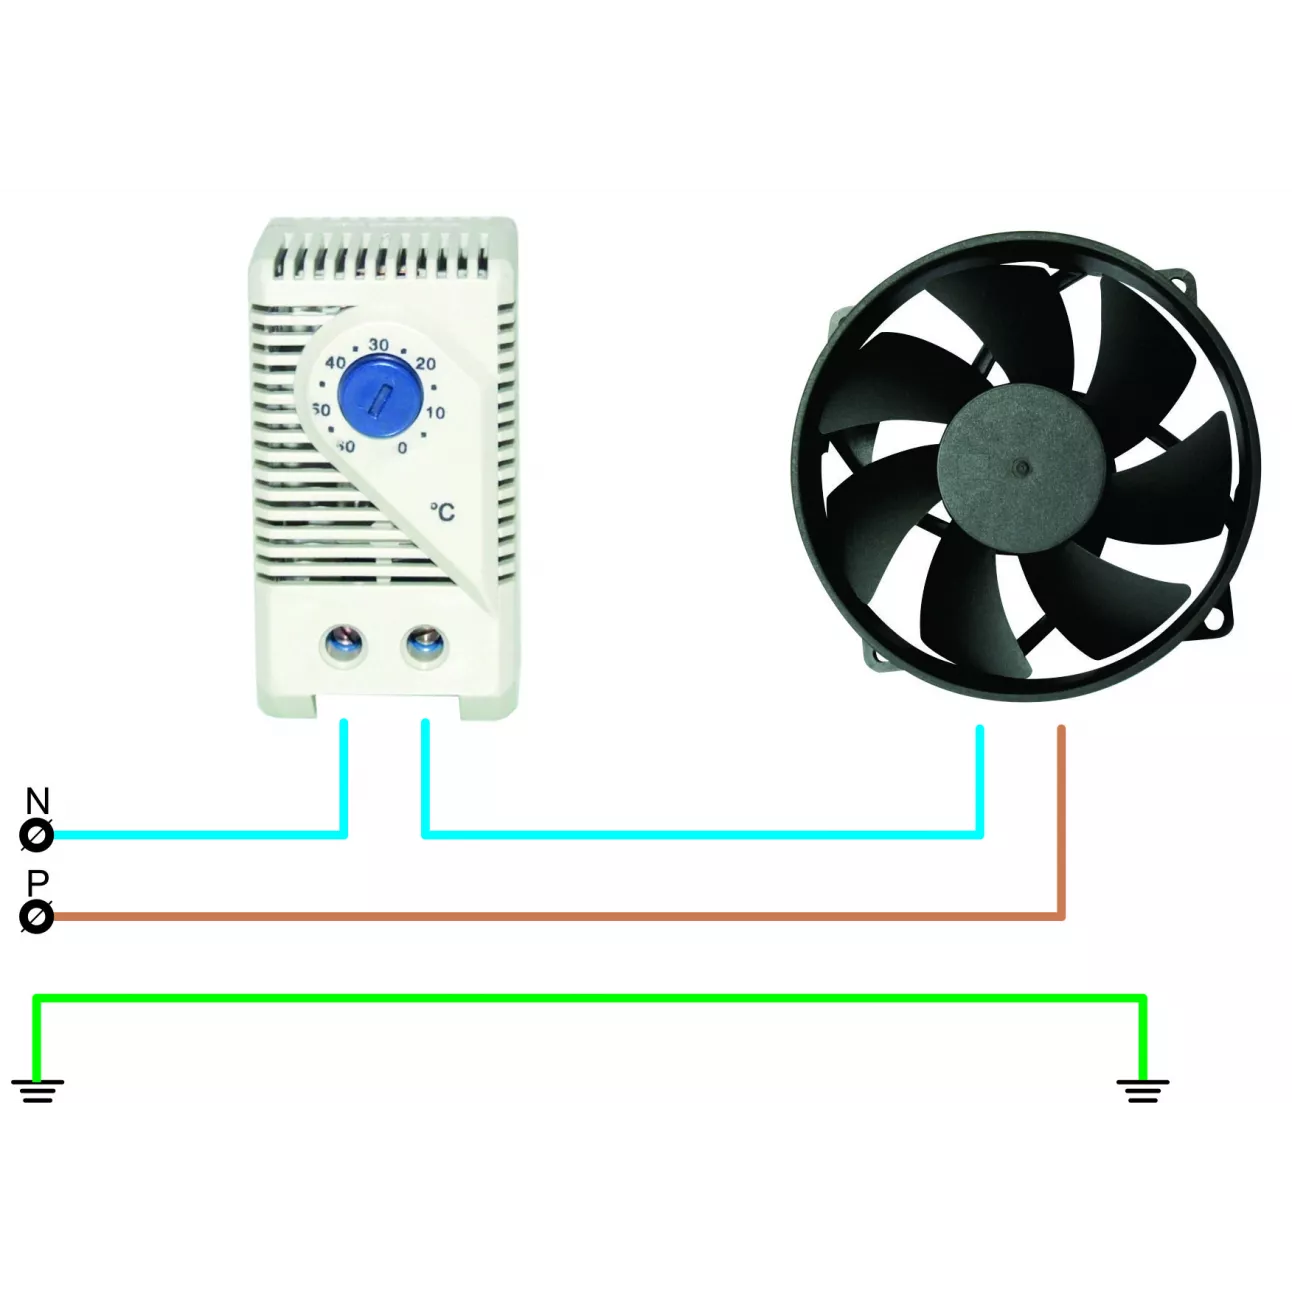 old_Блок управления климатом (термостат) для вентиляторных полок и блоков